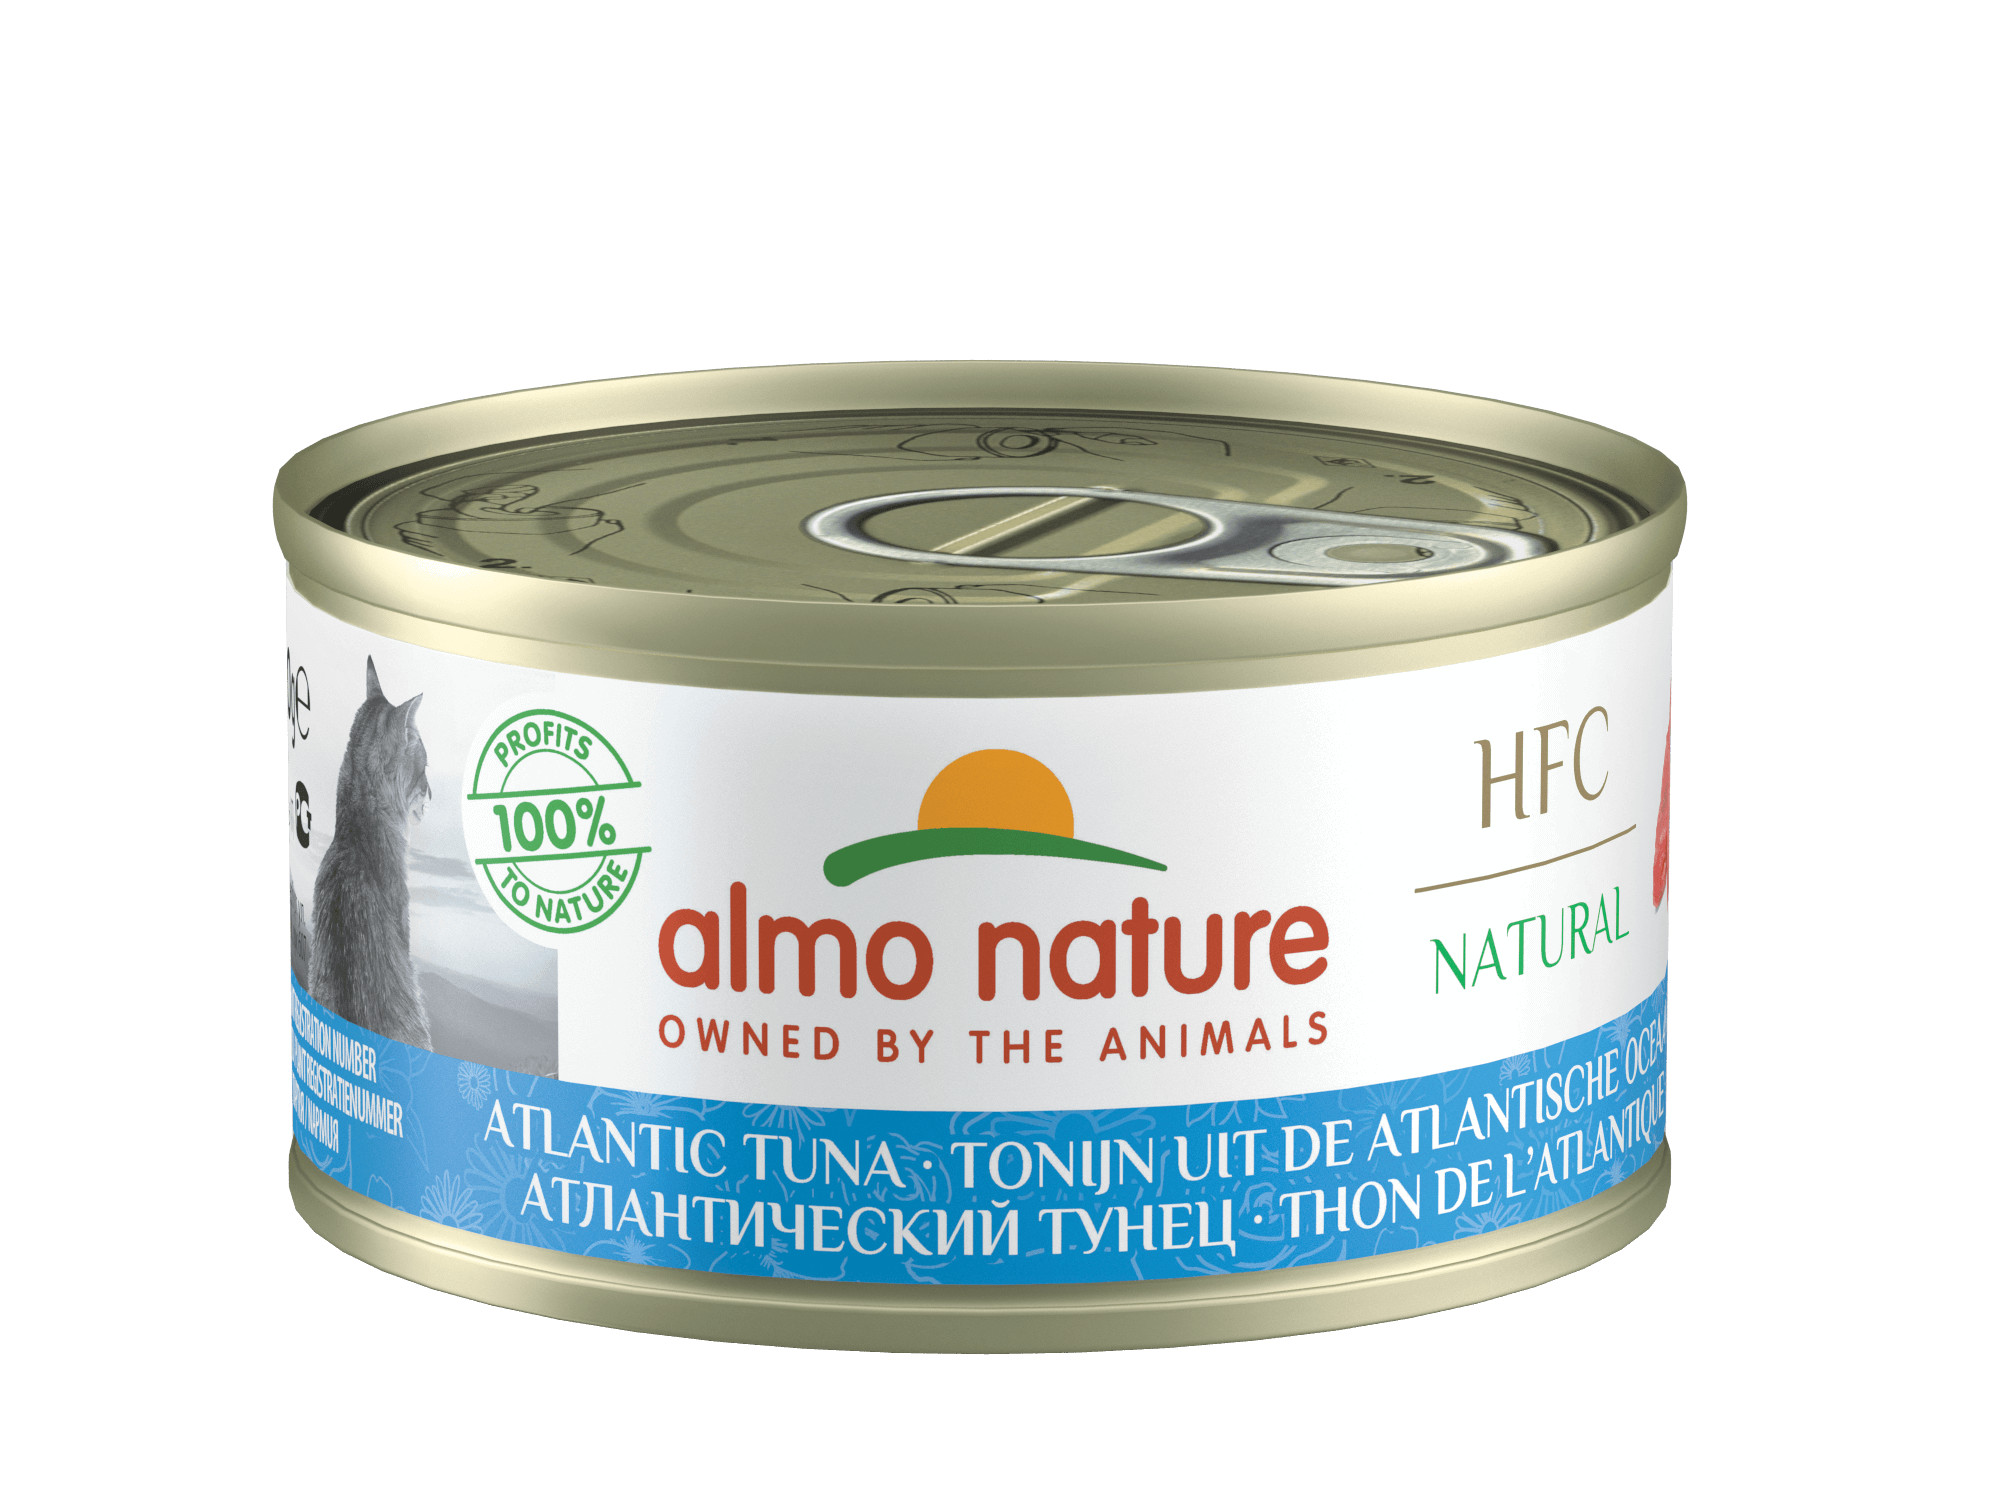 Almo Nature HFC Natural Atlantische Tonijn 70 gr